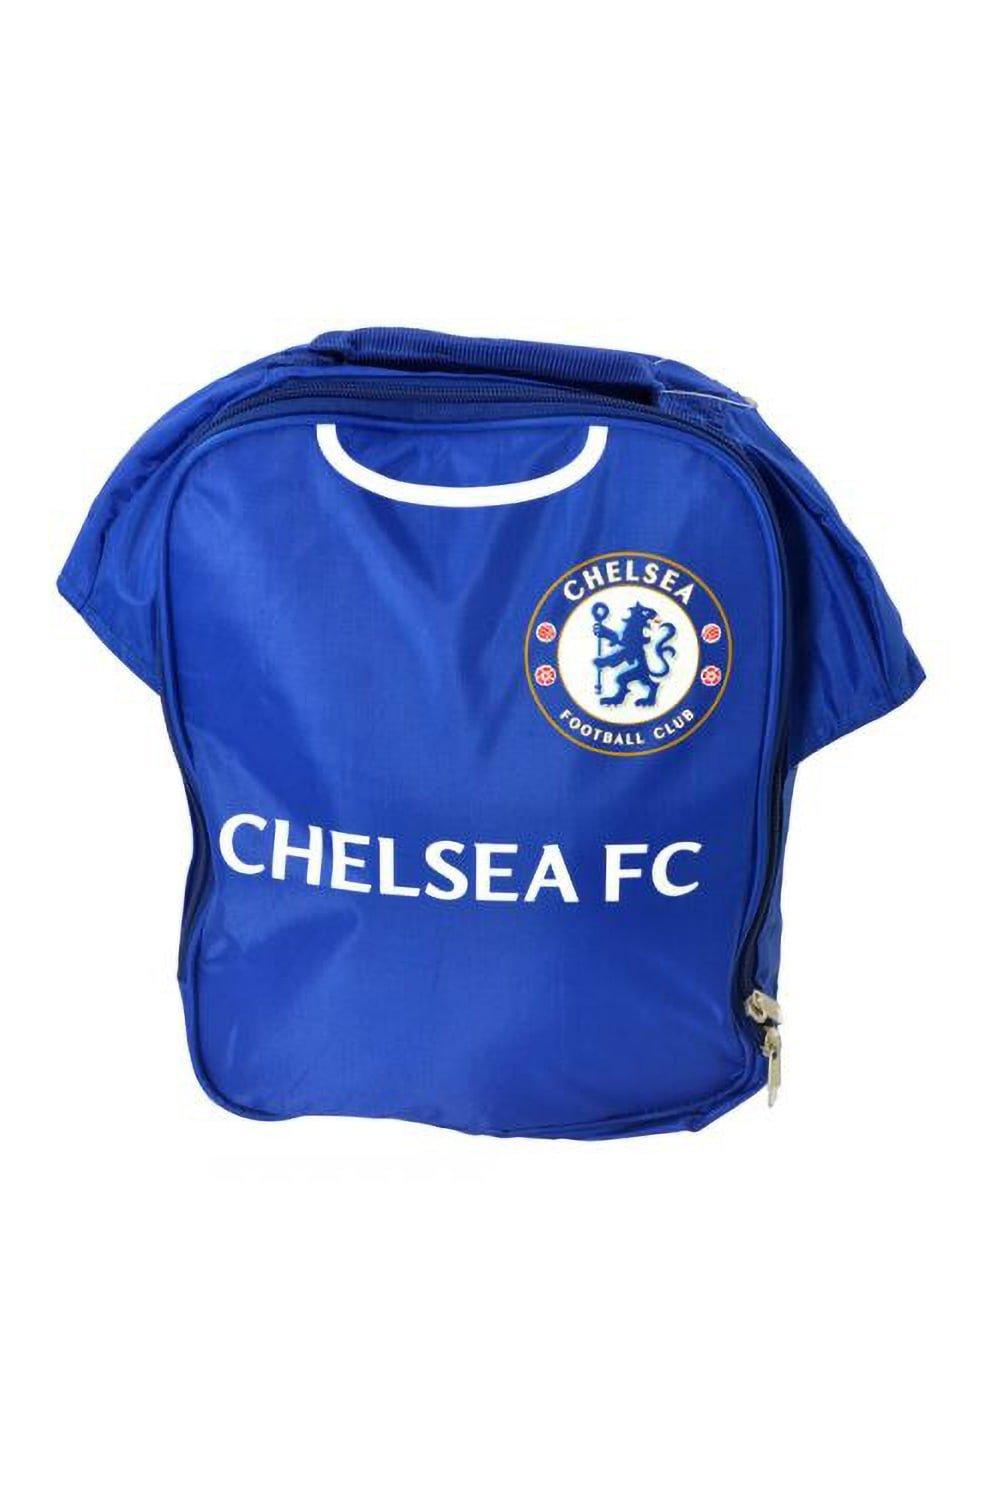 Официальная сумка для обеда футбольной формы Chelsea FC, синий ложка сувенирная сочи герб металл